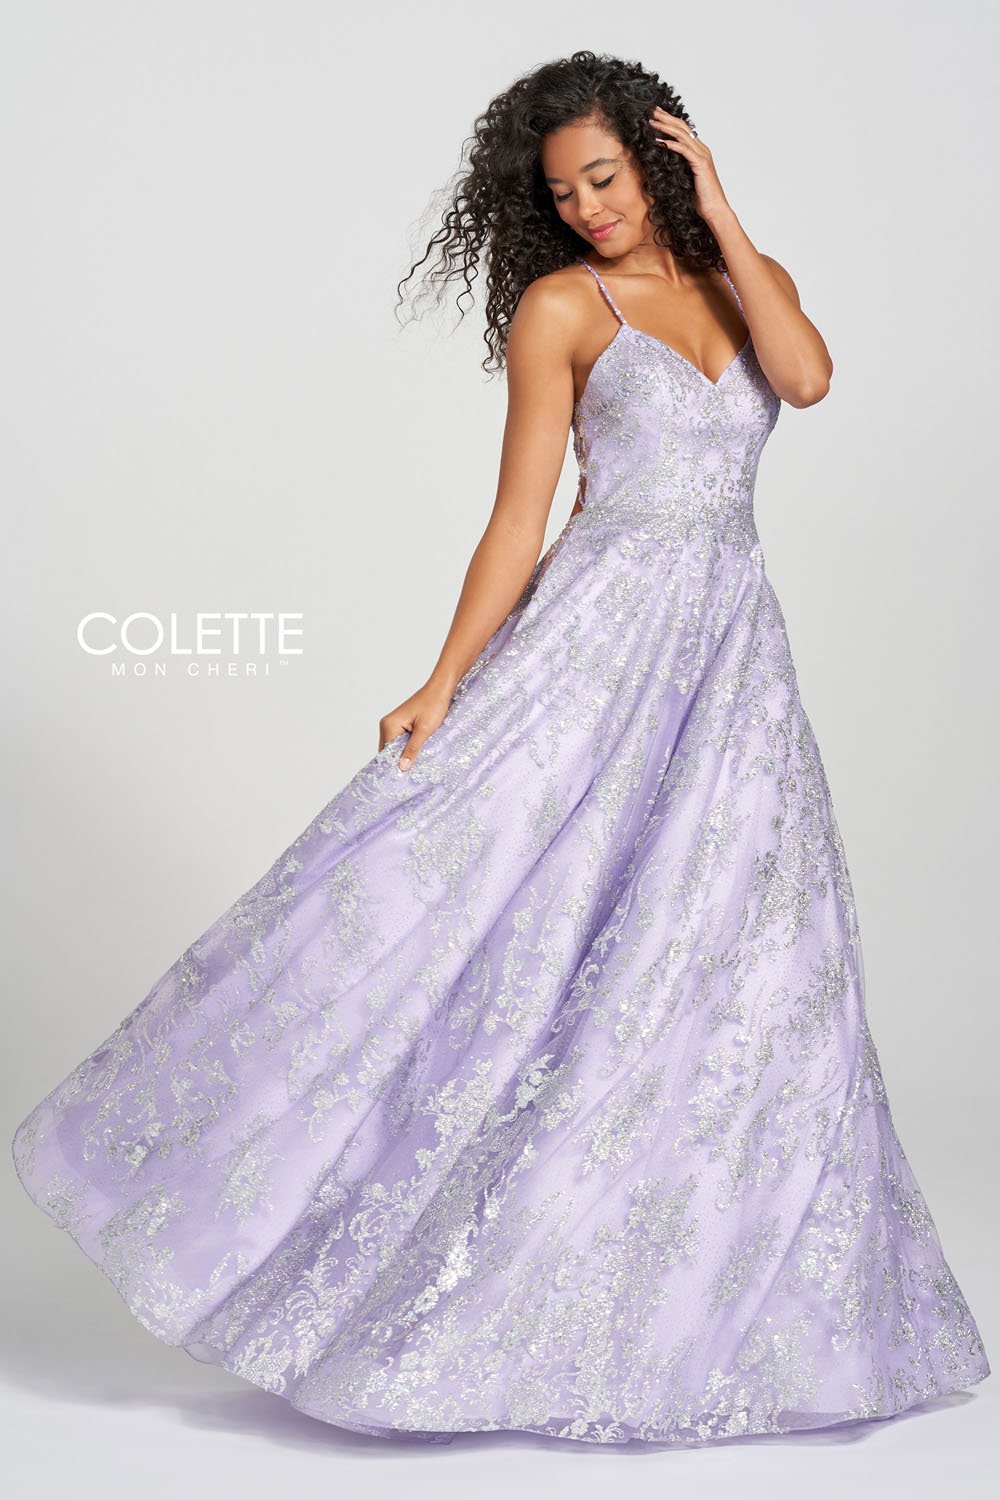 Colette CL12201 Violet Silver prom dresses.  Violet Silver prom dresses image by Colette.